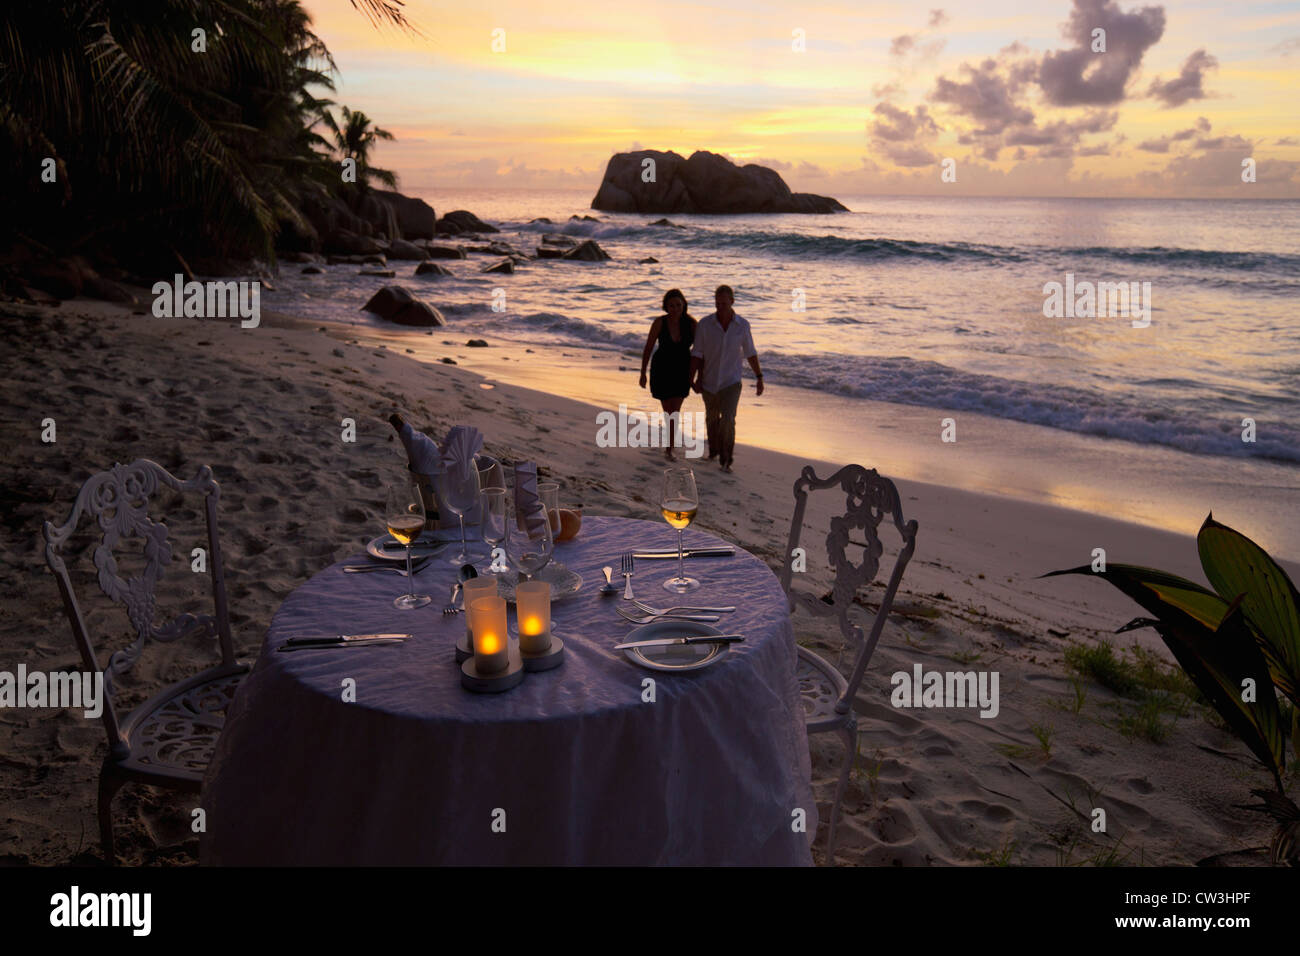 Romantisches Paar Spaziergang bei Sonnenuntergang am Strand mit Esstisch im Vordergrund. Cousine Island.Seychelles Stockfoto